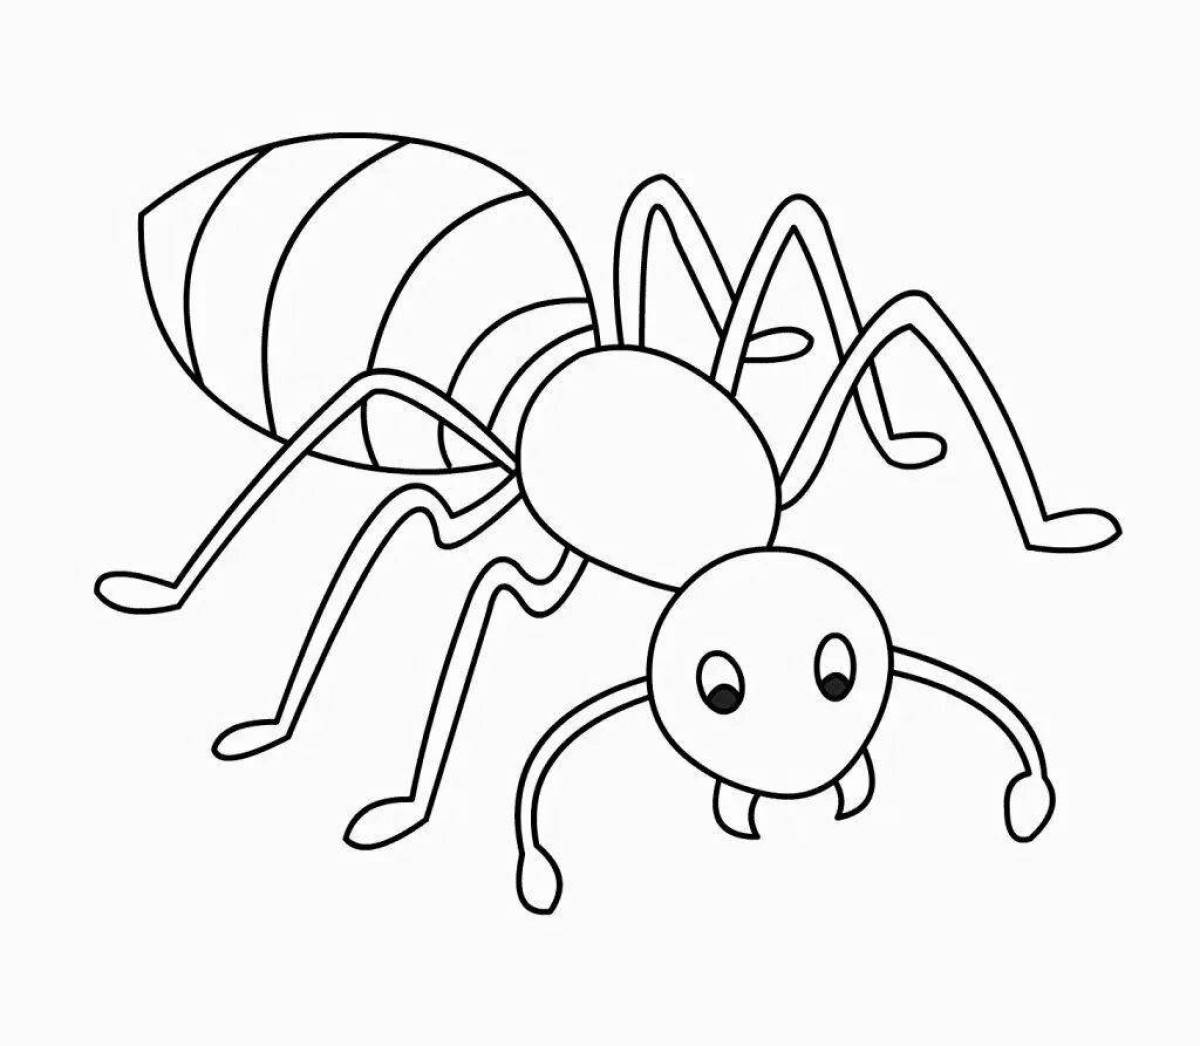 Забавный рисунок муравья